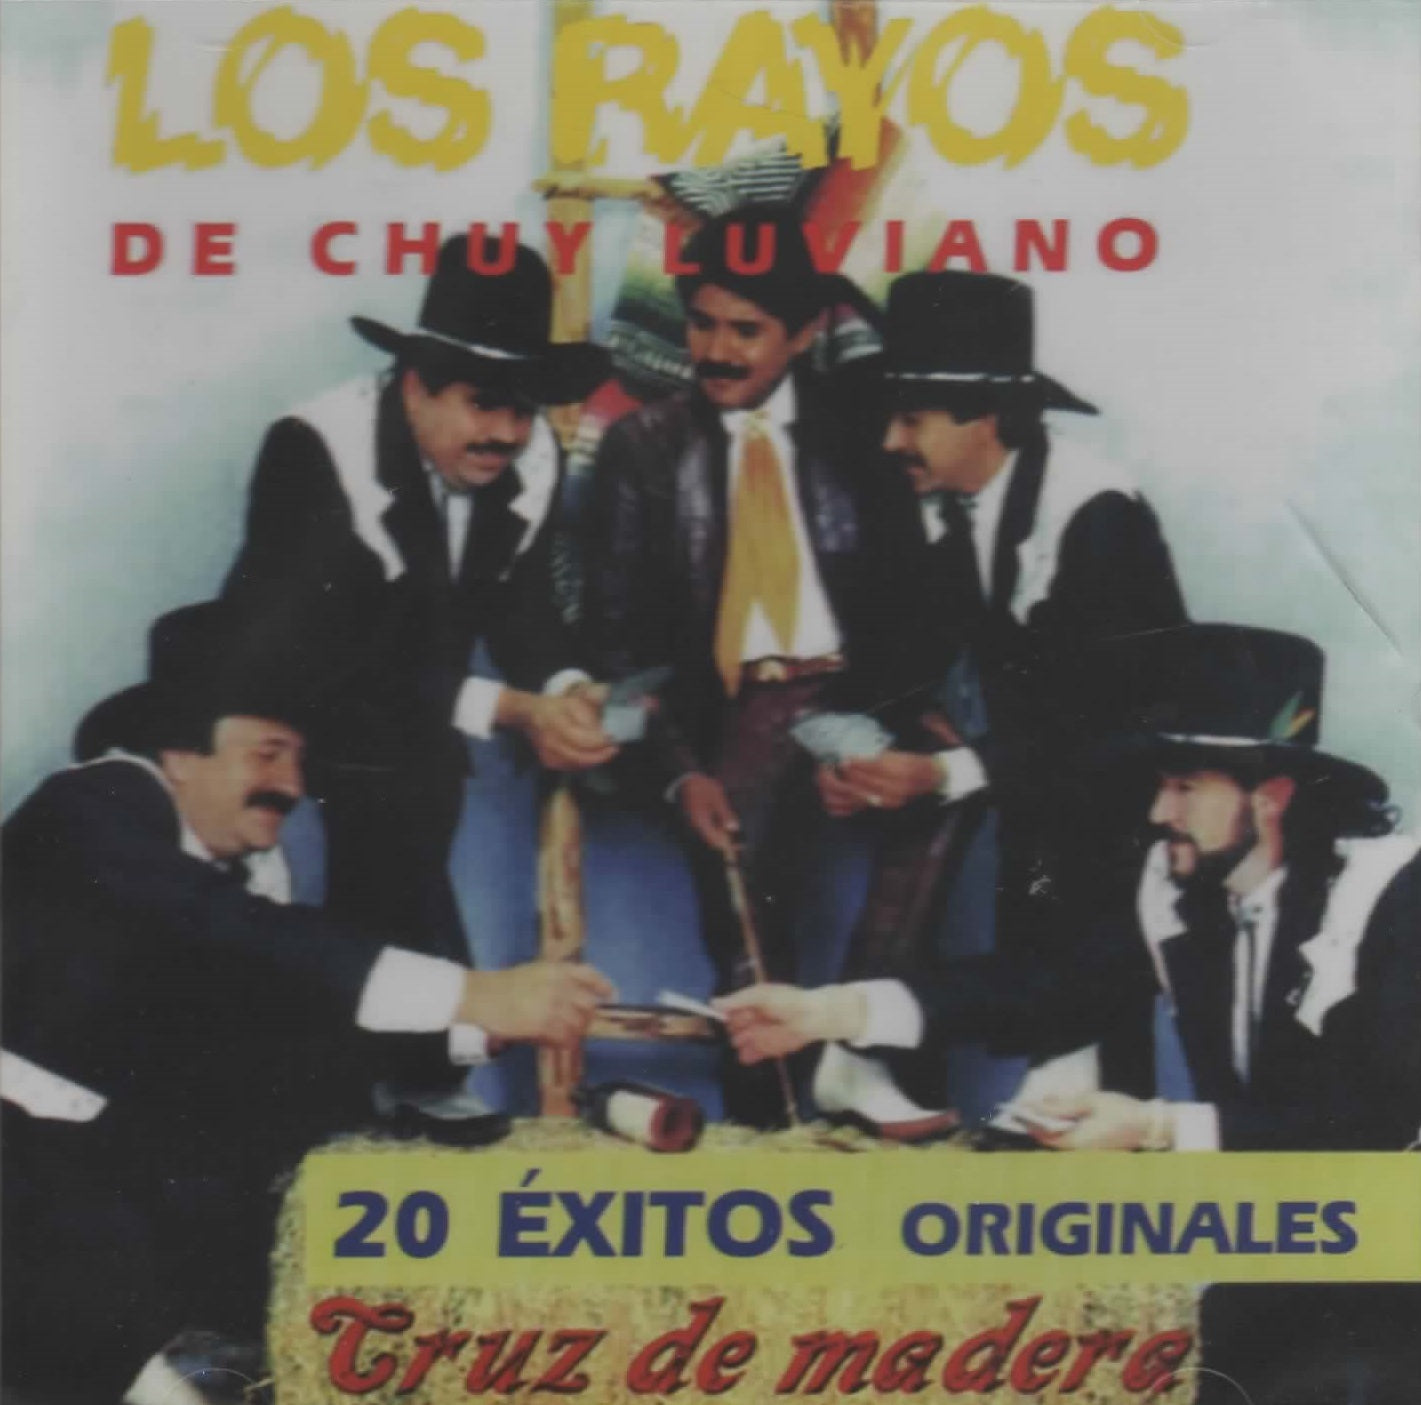 CD Los Rayos De Chuy Liviano - 20 Éxitos Originales Cruz De Madera